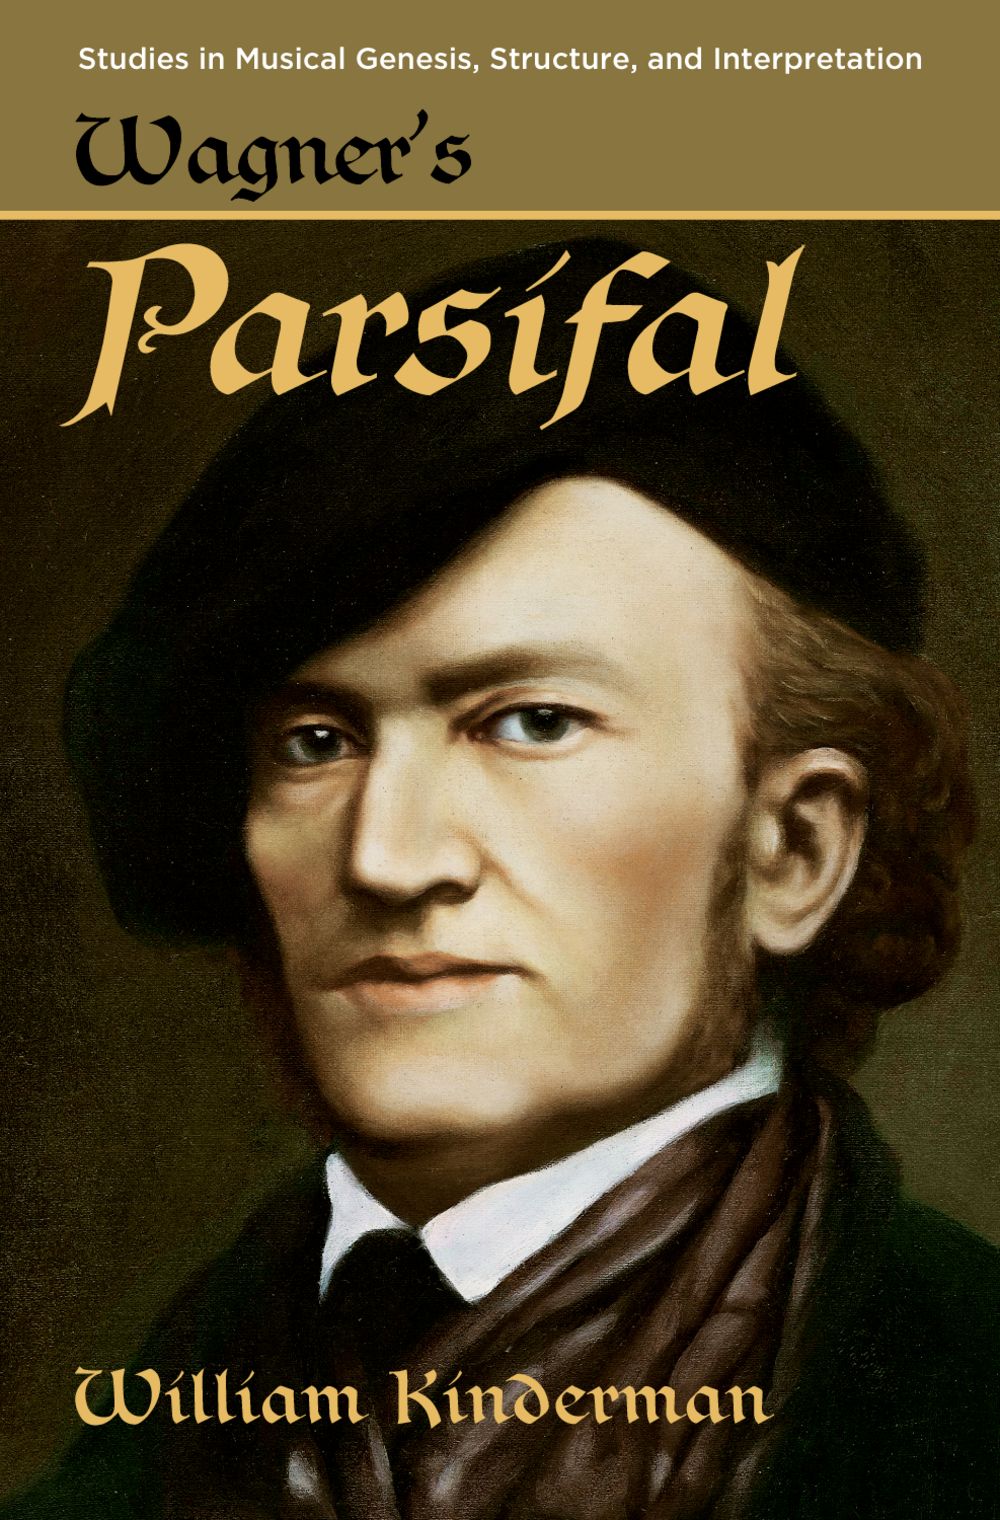 Kidnerman Wagners Parsifal Hardback Sheet Music Songbook